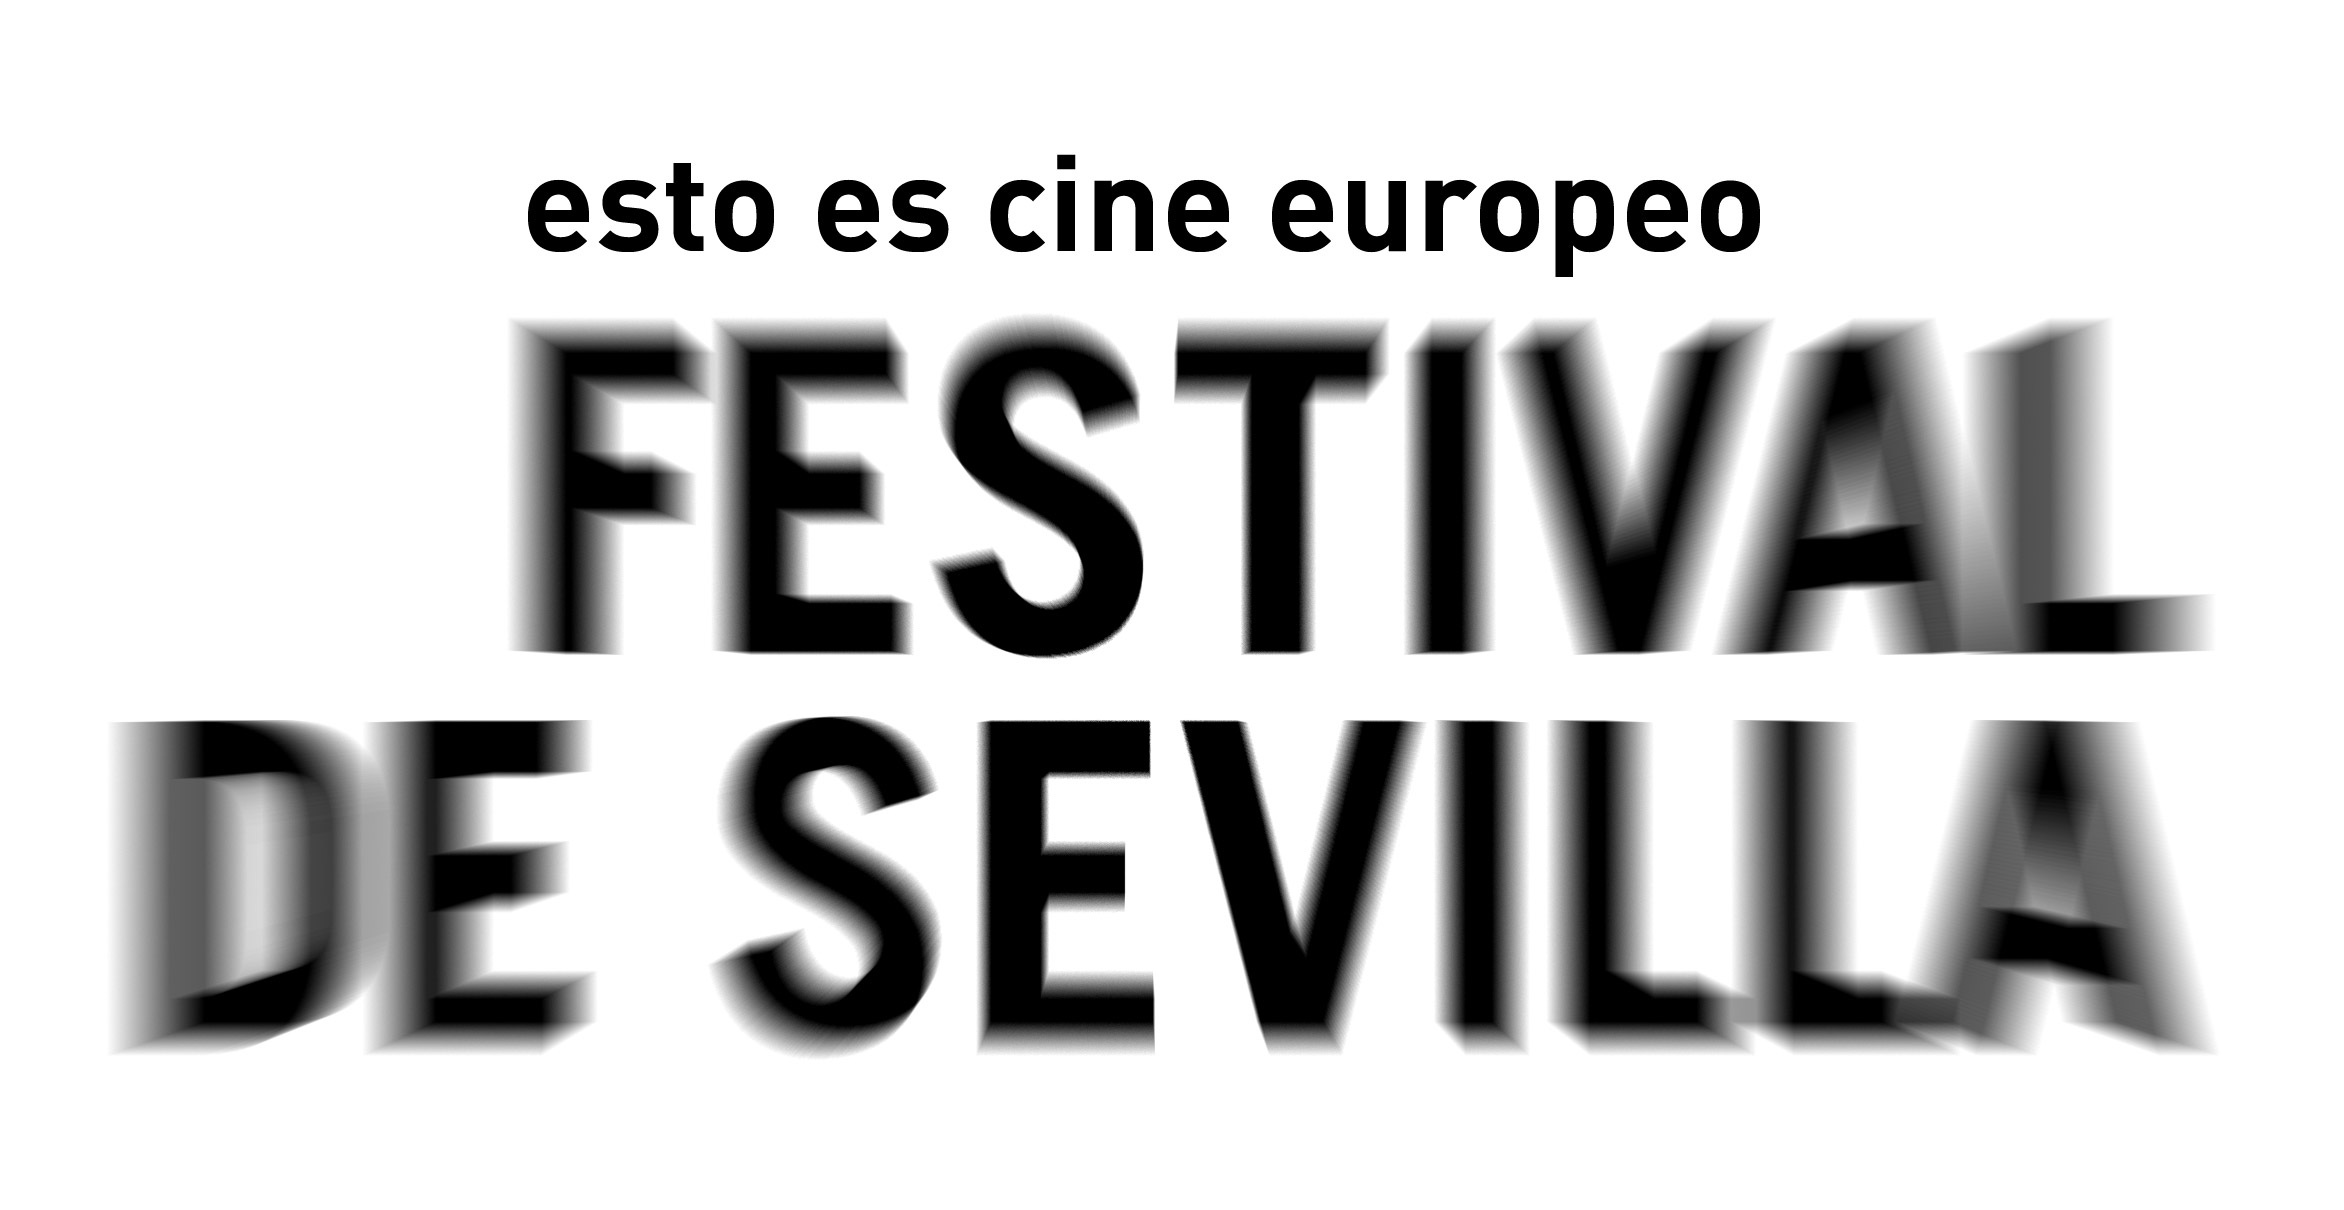 Festival de Sevilla. Esto es cine europeo